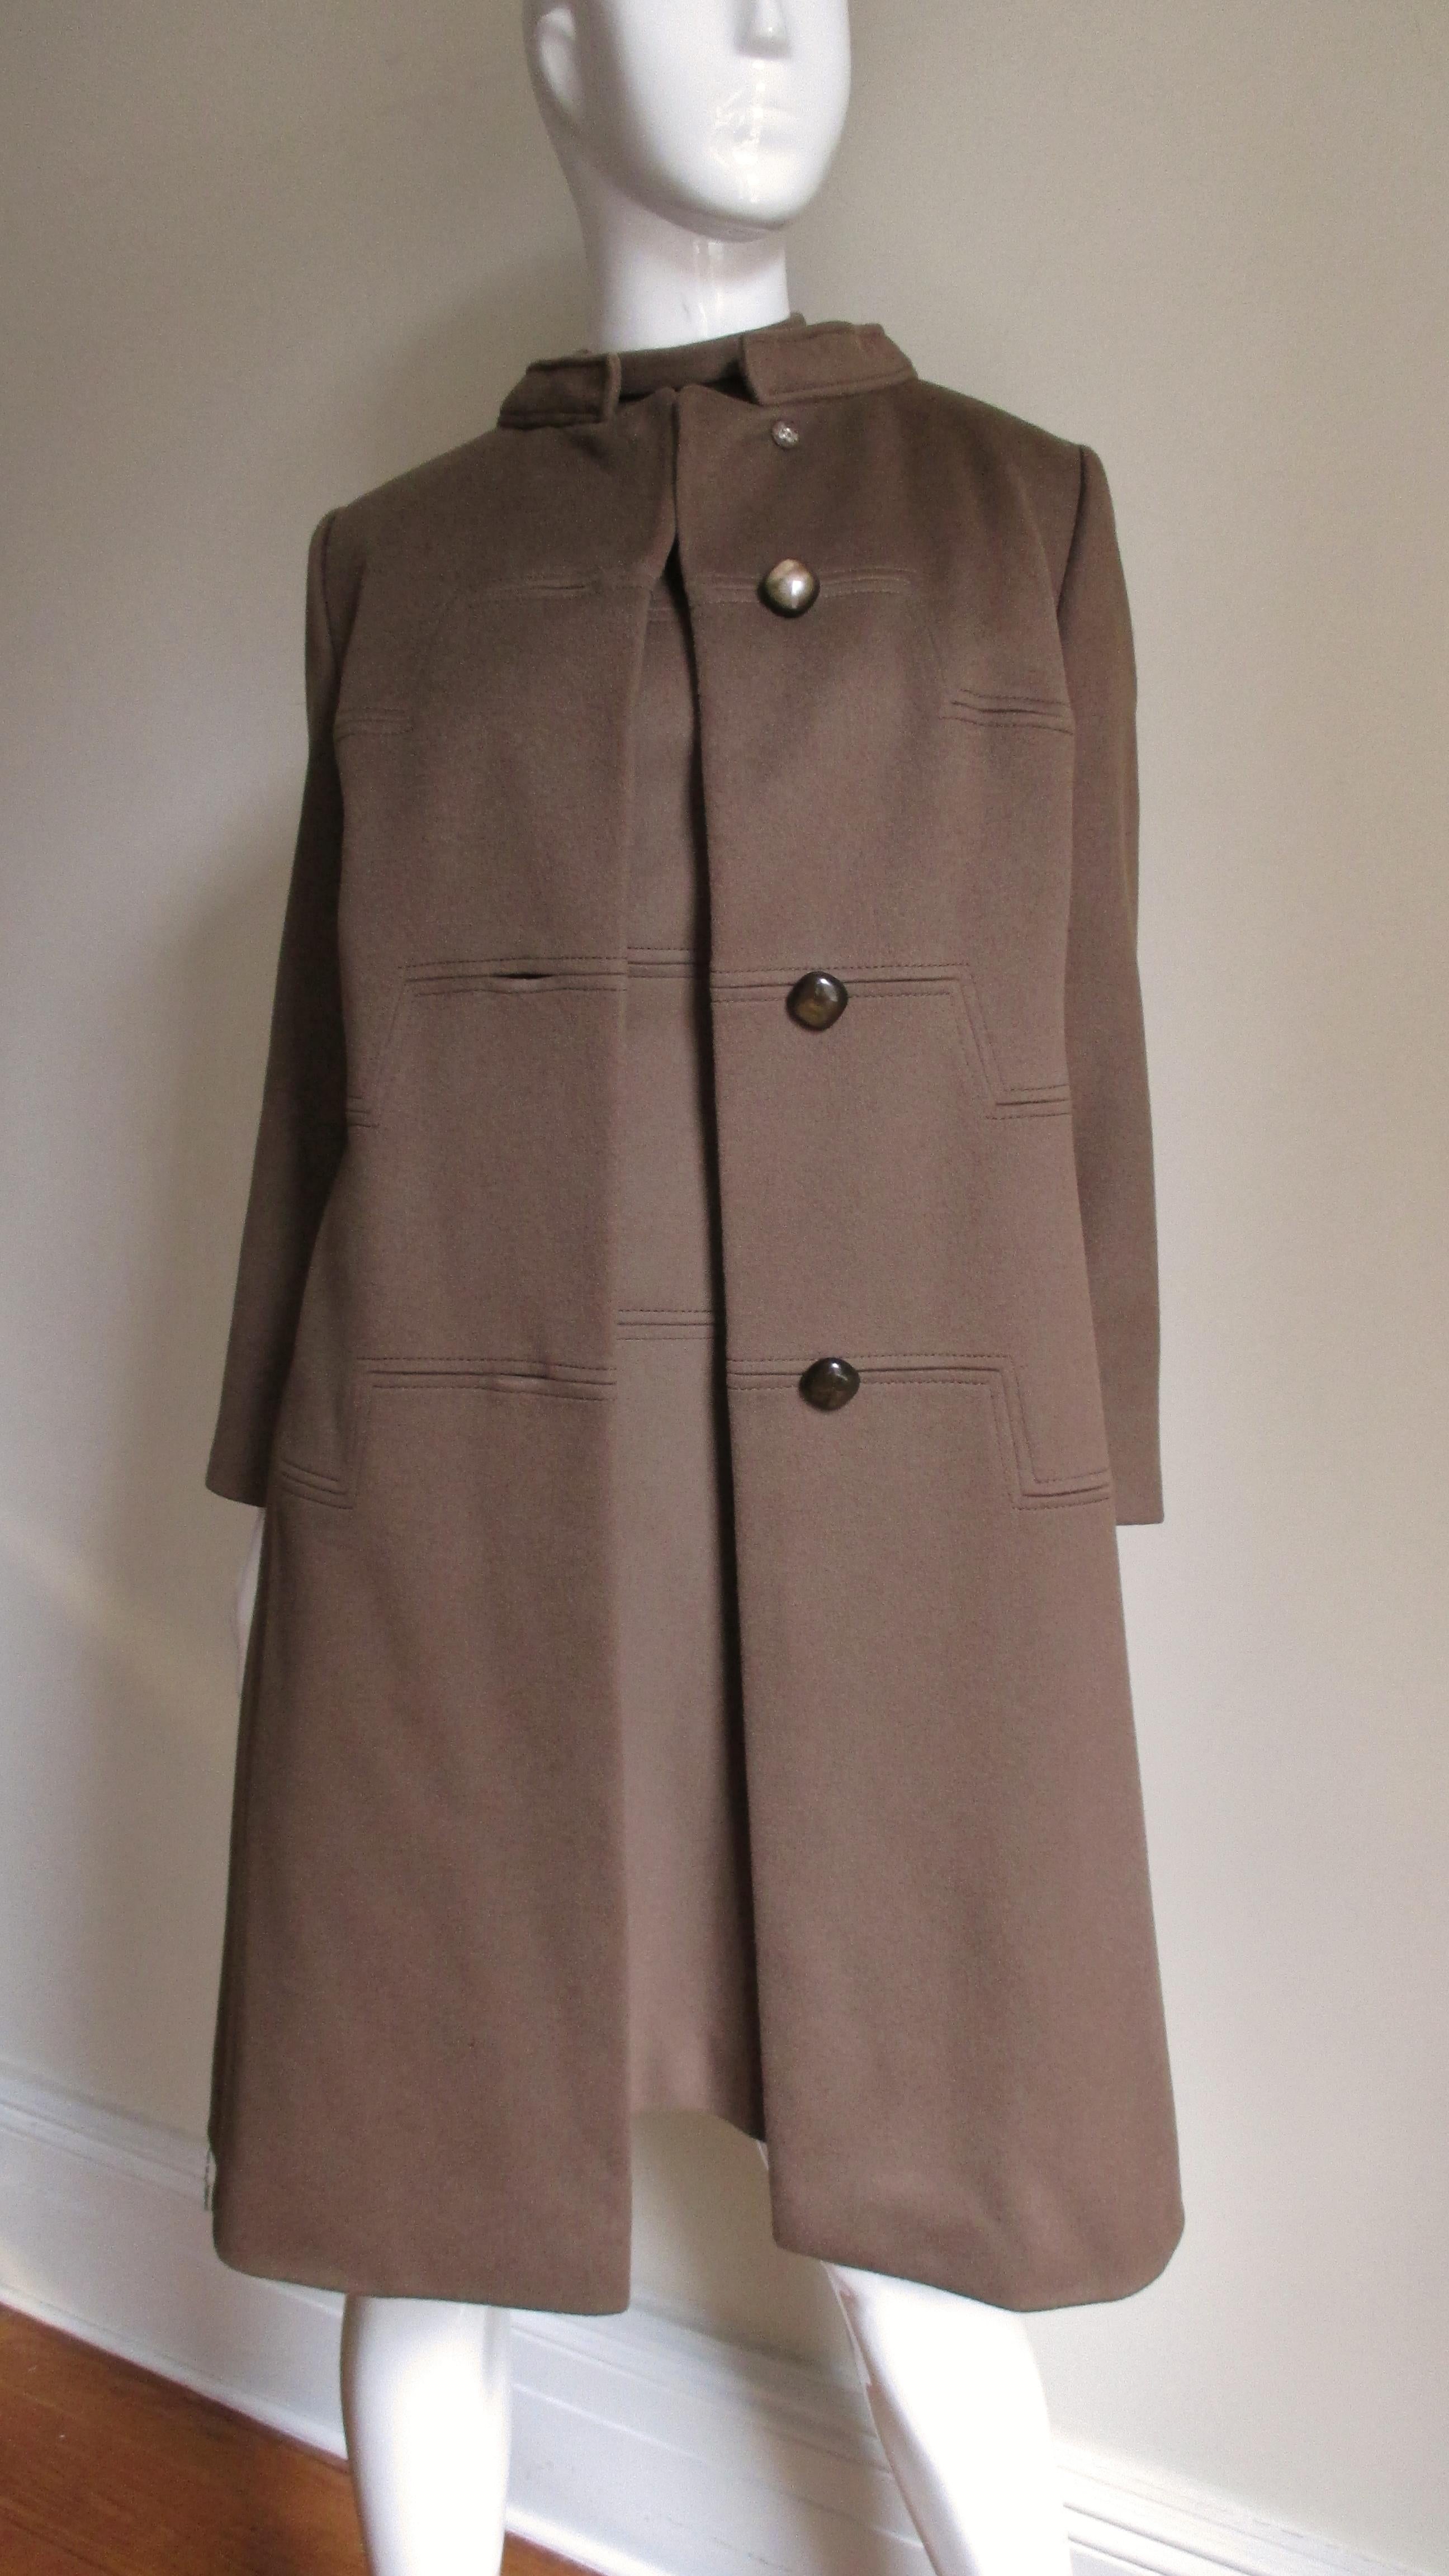 Magnifique ensemble robe et manteau des années 1960 en cachemire brun fabriqué par Rike's, Suisse, pour le grand magasin de luxe Dayton. La robe en ligne A a des manches courtes, un col montant et trois coutures horizontales carrées - une sur le